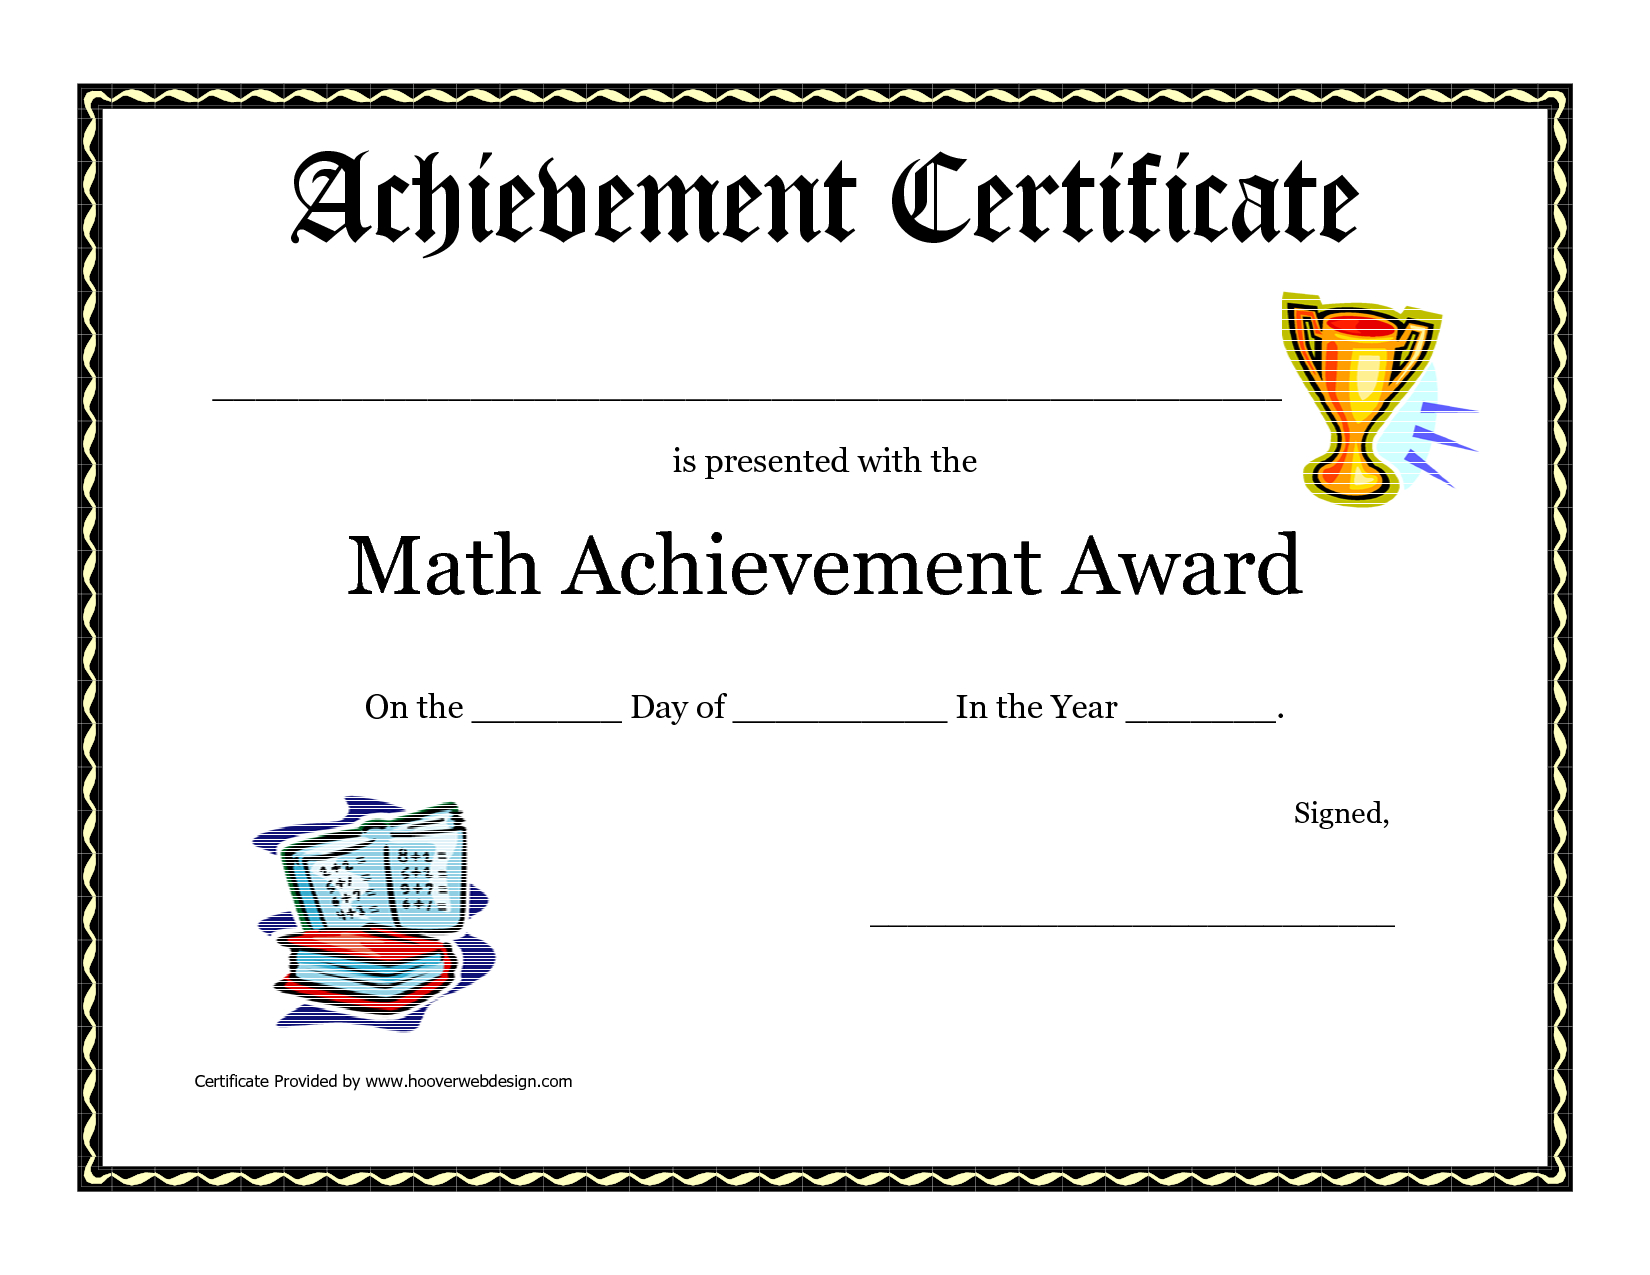 Math Achievement Award Printable Certificate Pdf | Math In Math Certificate Template